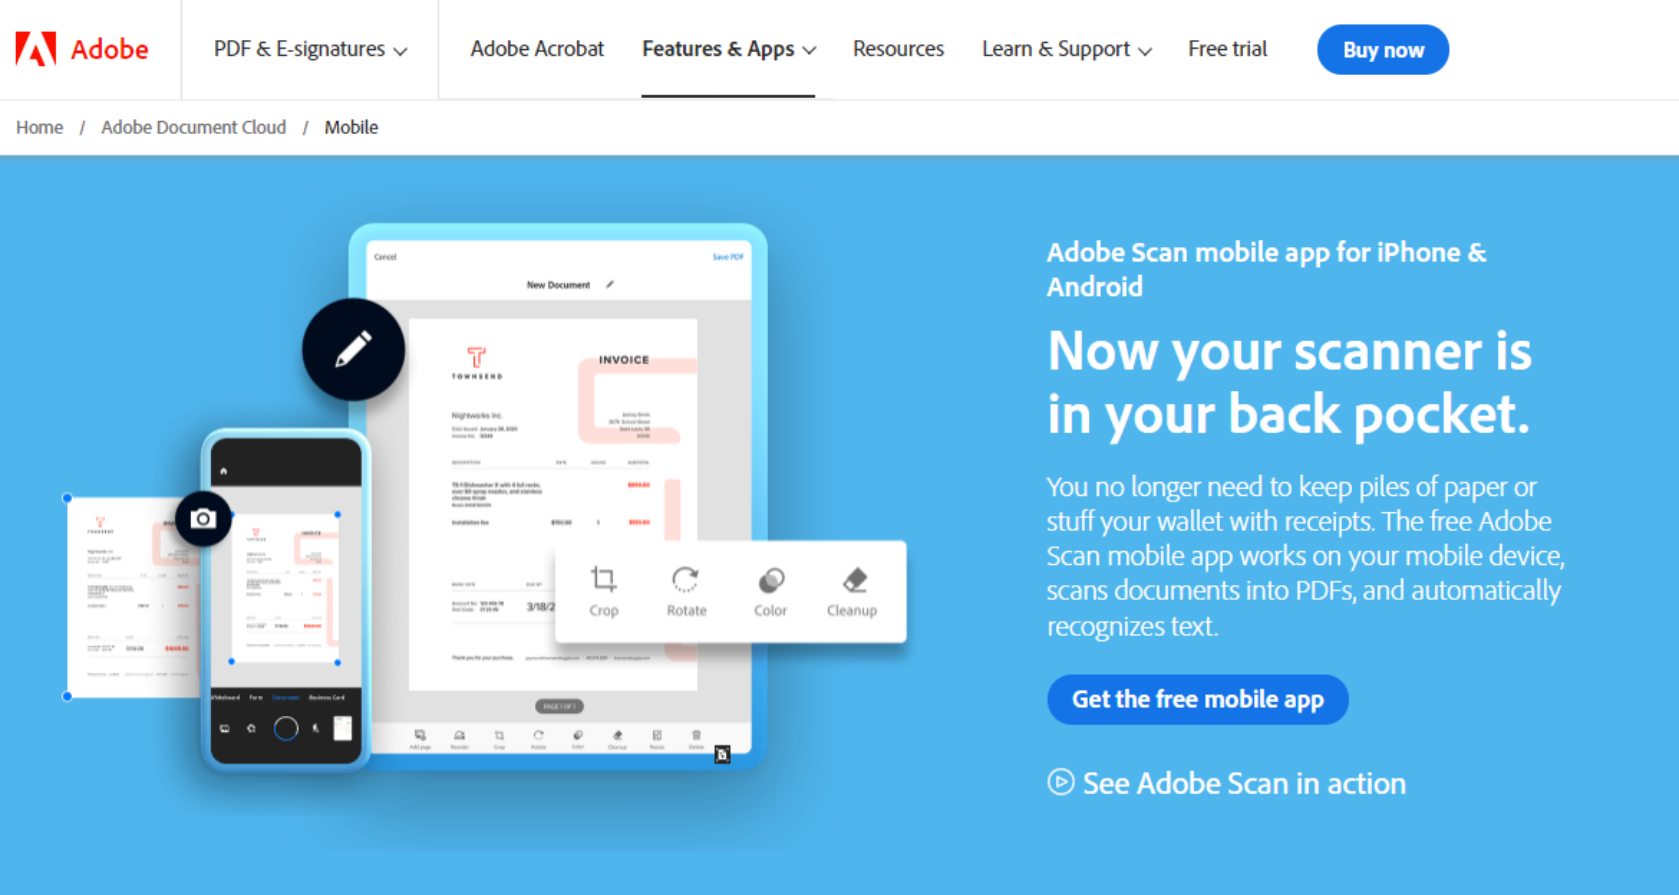 Adobe Scan app website homepage